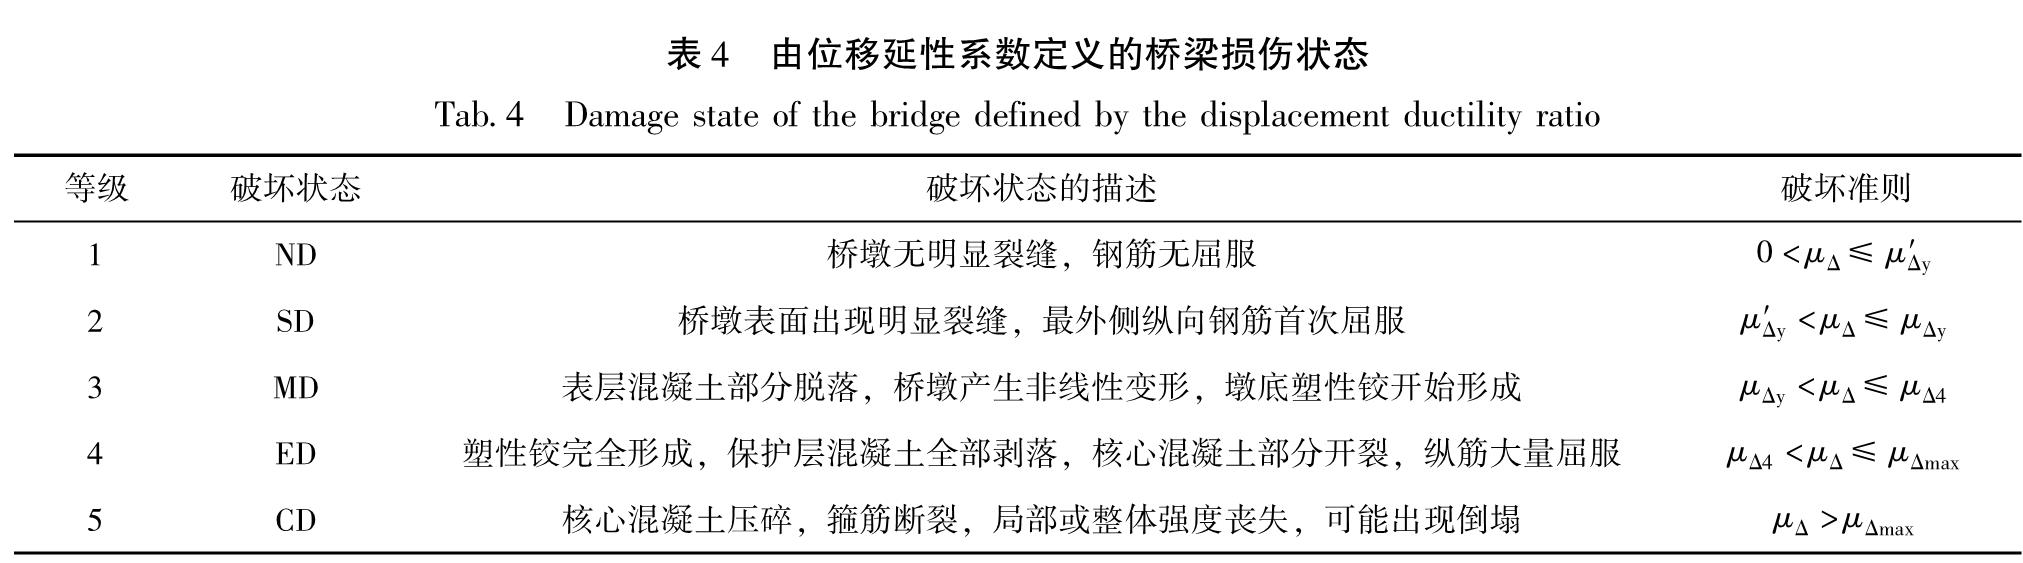 表4 由位移延性系数定义的桥梁损伤状态<br/>Tab.4 Damage state of the bridge defined by the displacement ductility ratio